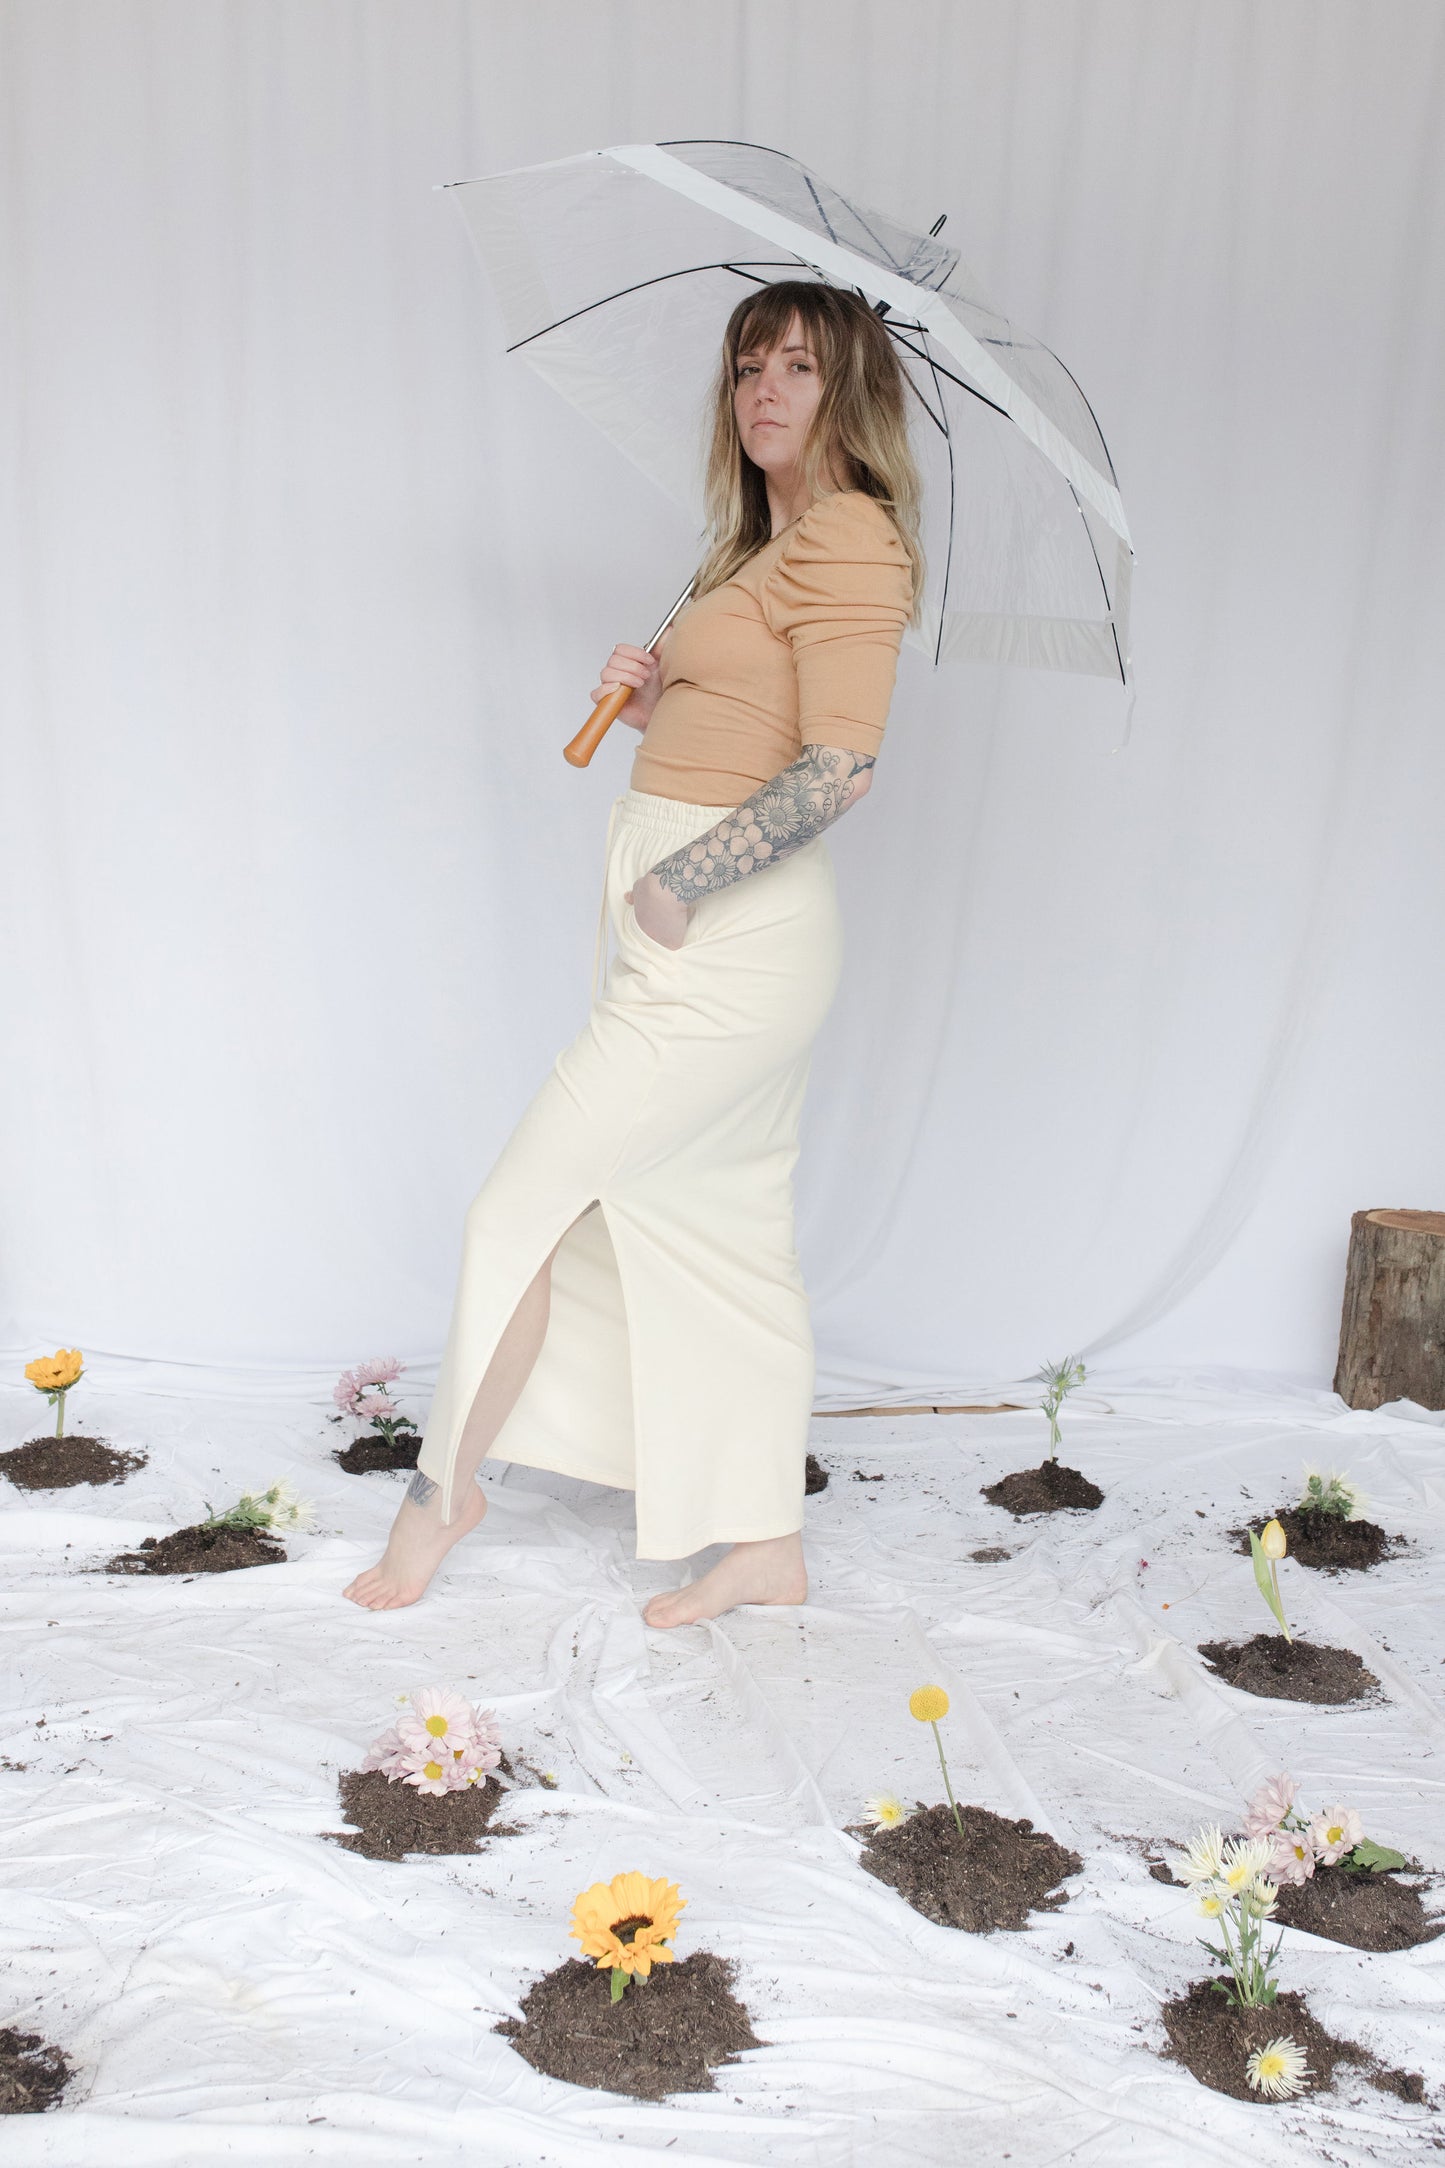 Image of model in skirt holding umbrella